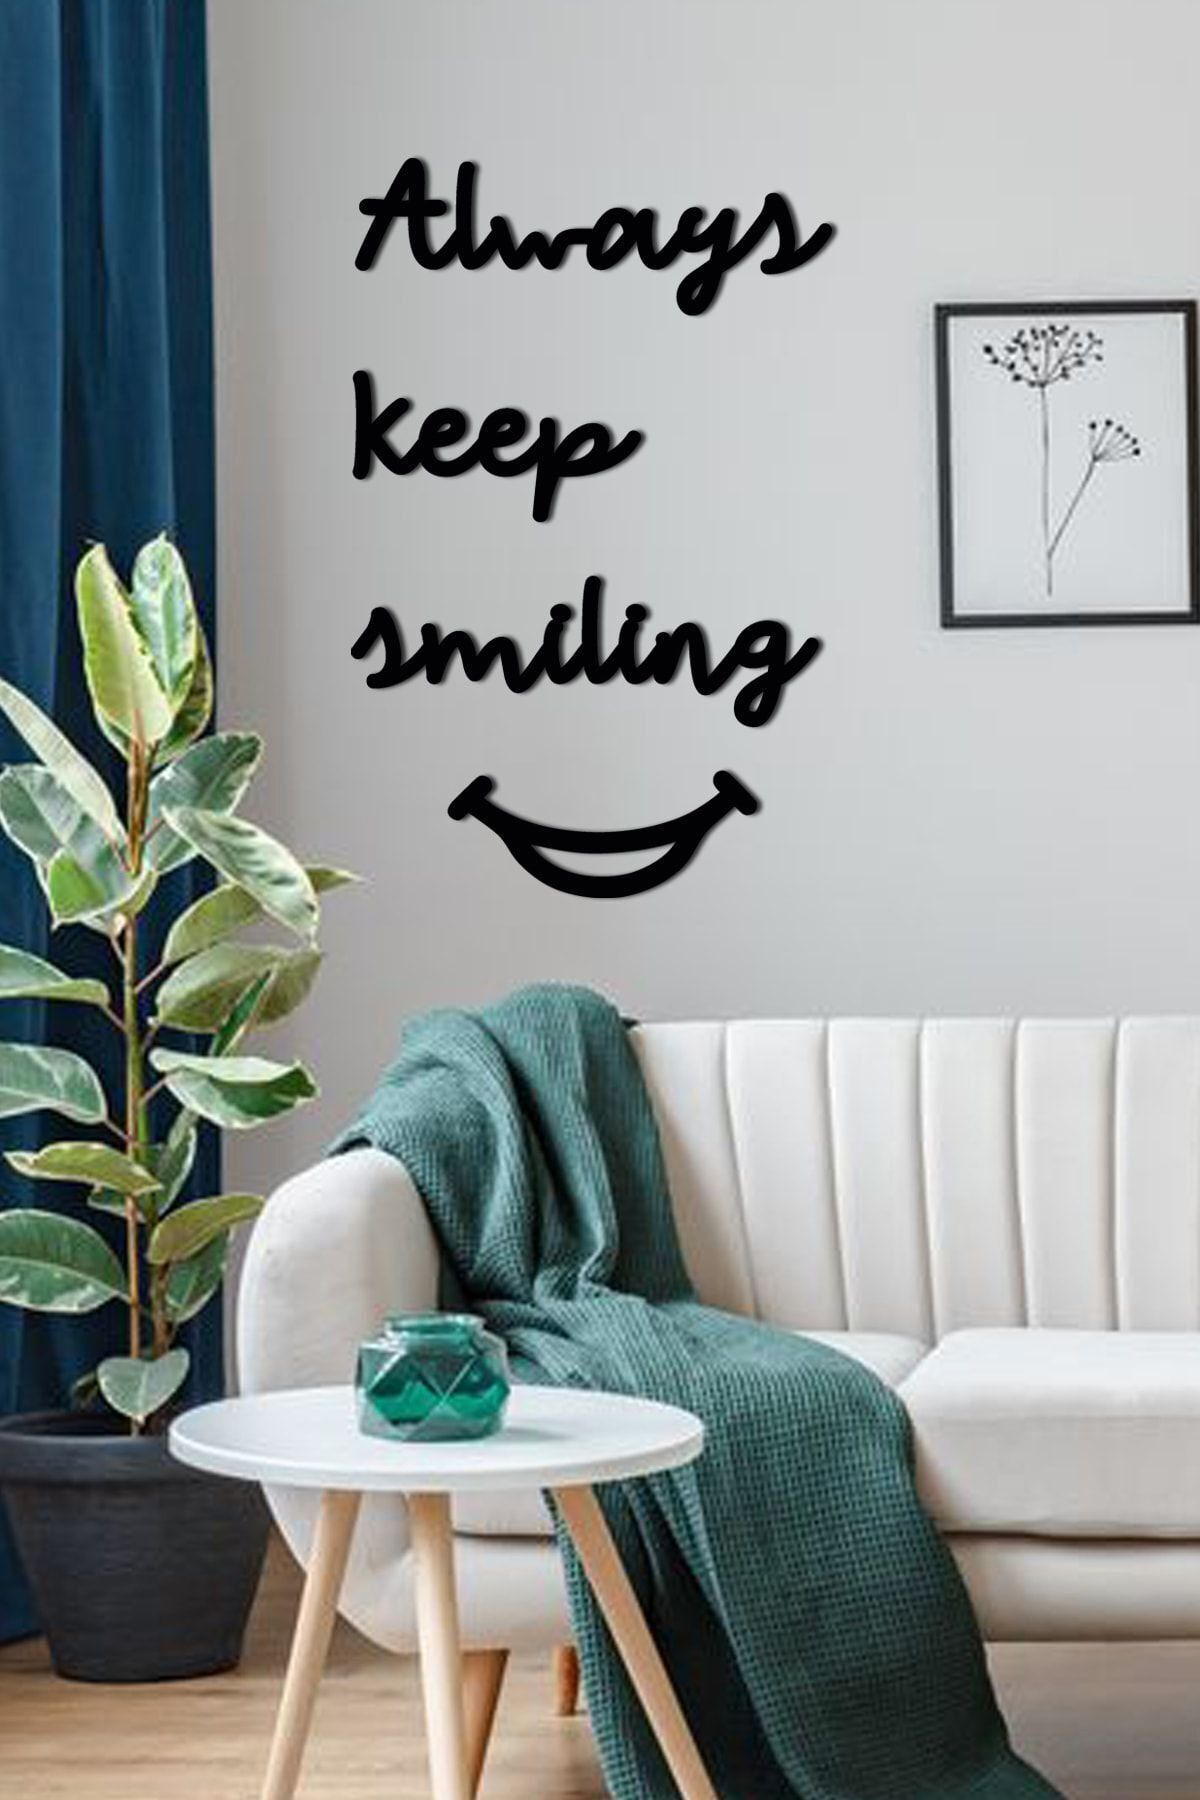 evdeucuz Always Keep Smiling Dekoratif Duvar Yazısı